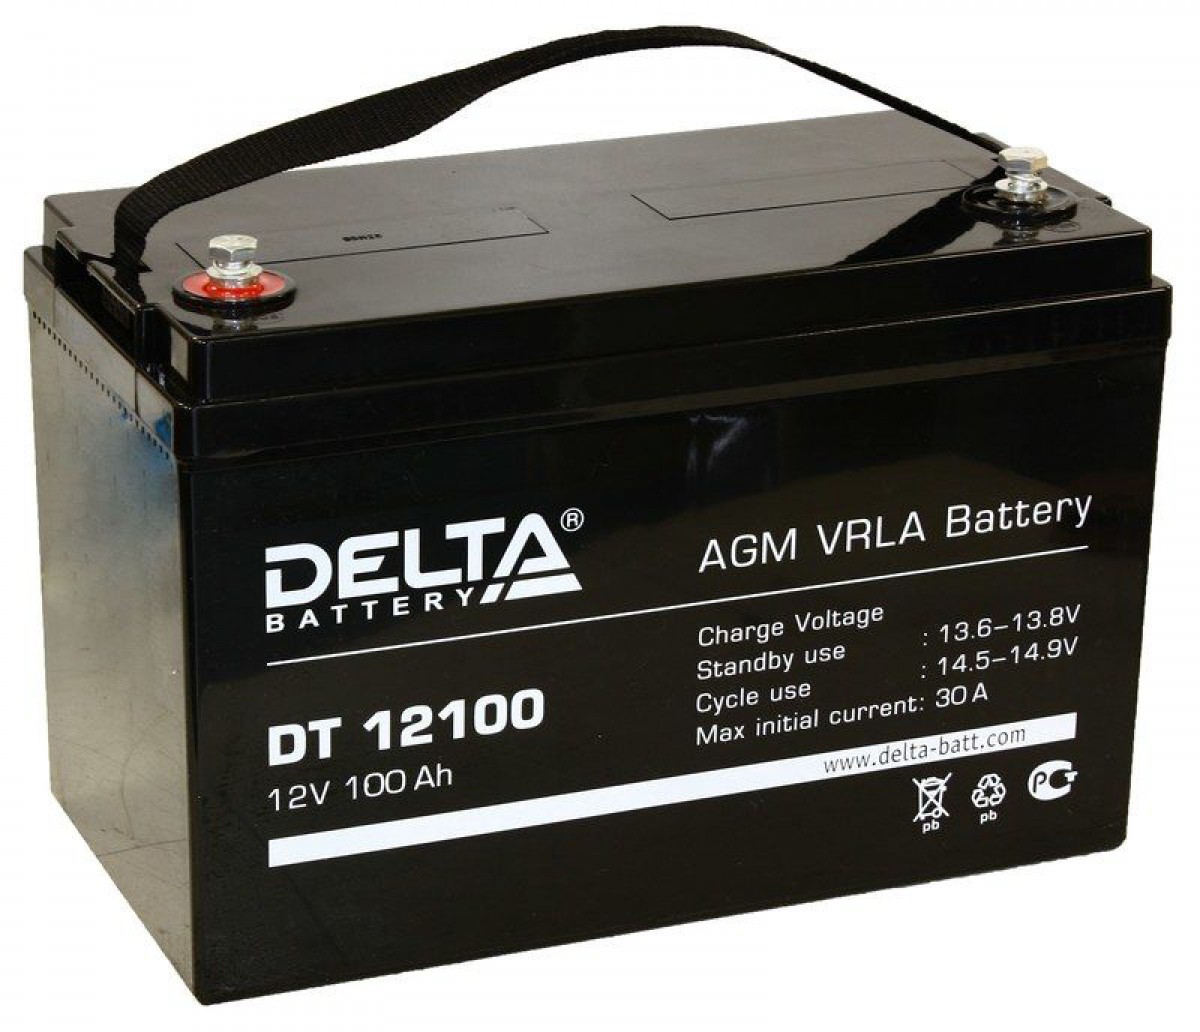 Agm срок службы. Delta Battery DT 12100. Аккумуляторная батарея Delta DT 12100 (12v / 100ah). DT 12100 Delta аккумуляторная батарея. Delta 100 Ач 12 вольт DT 12100.